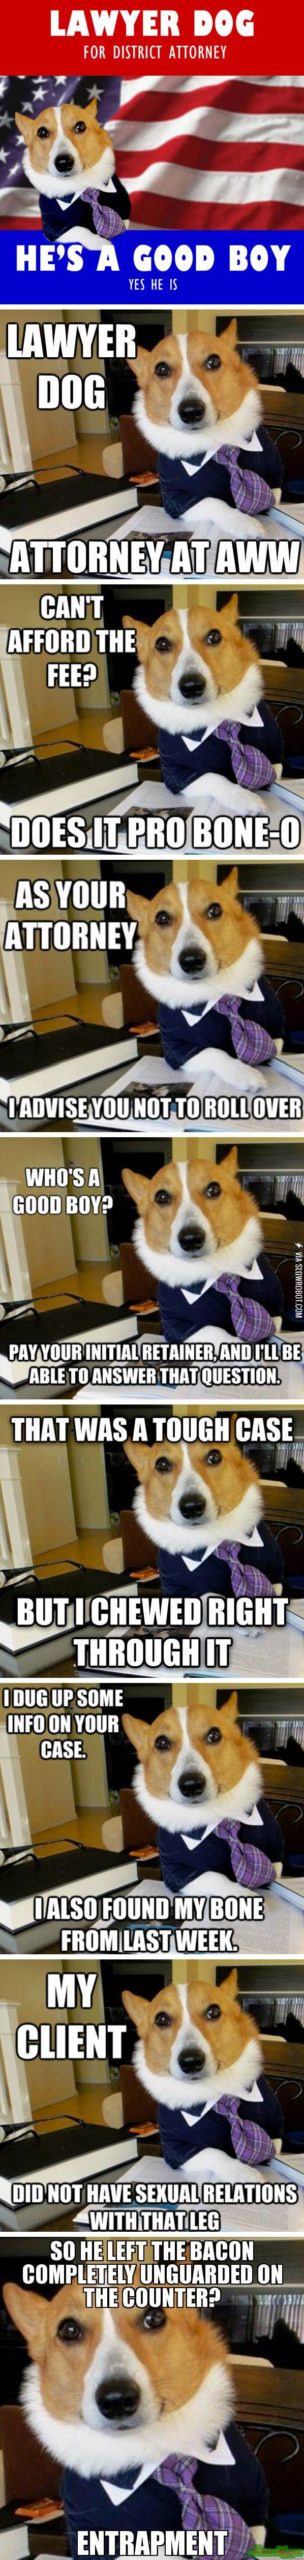 Lawyer+dog.